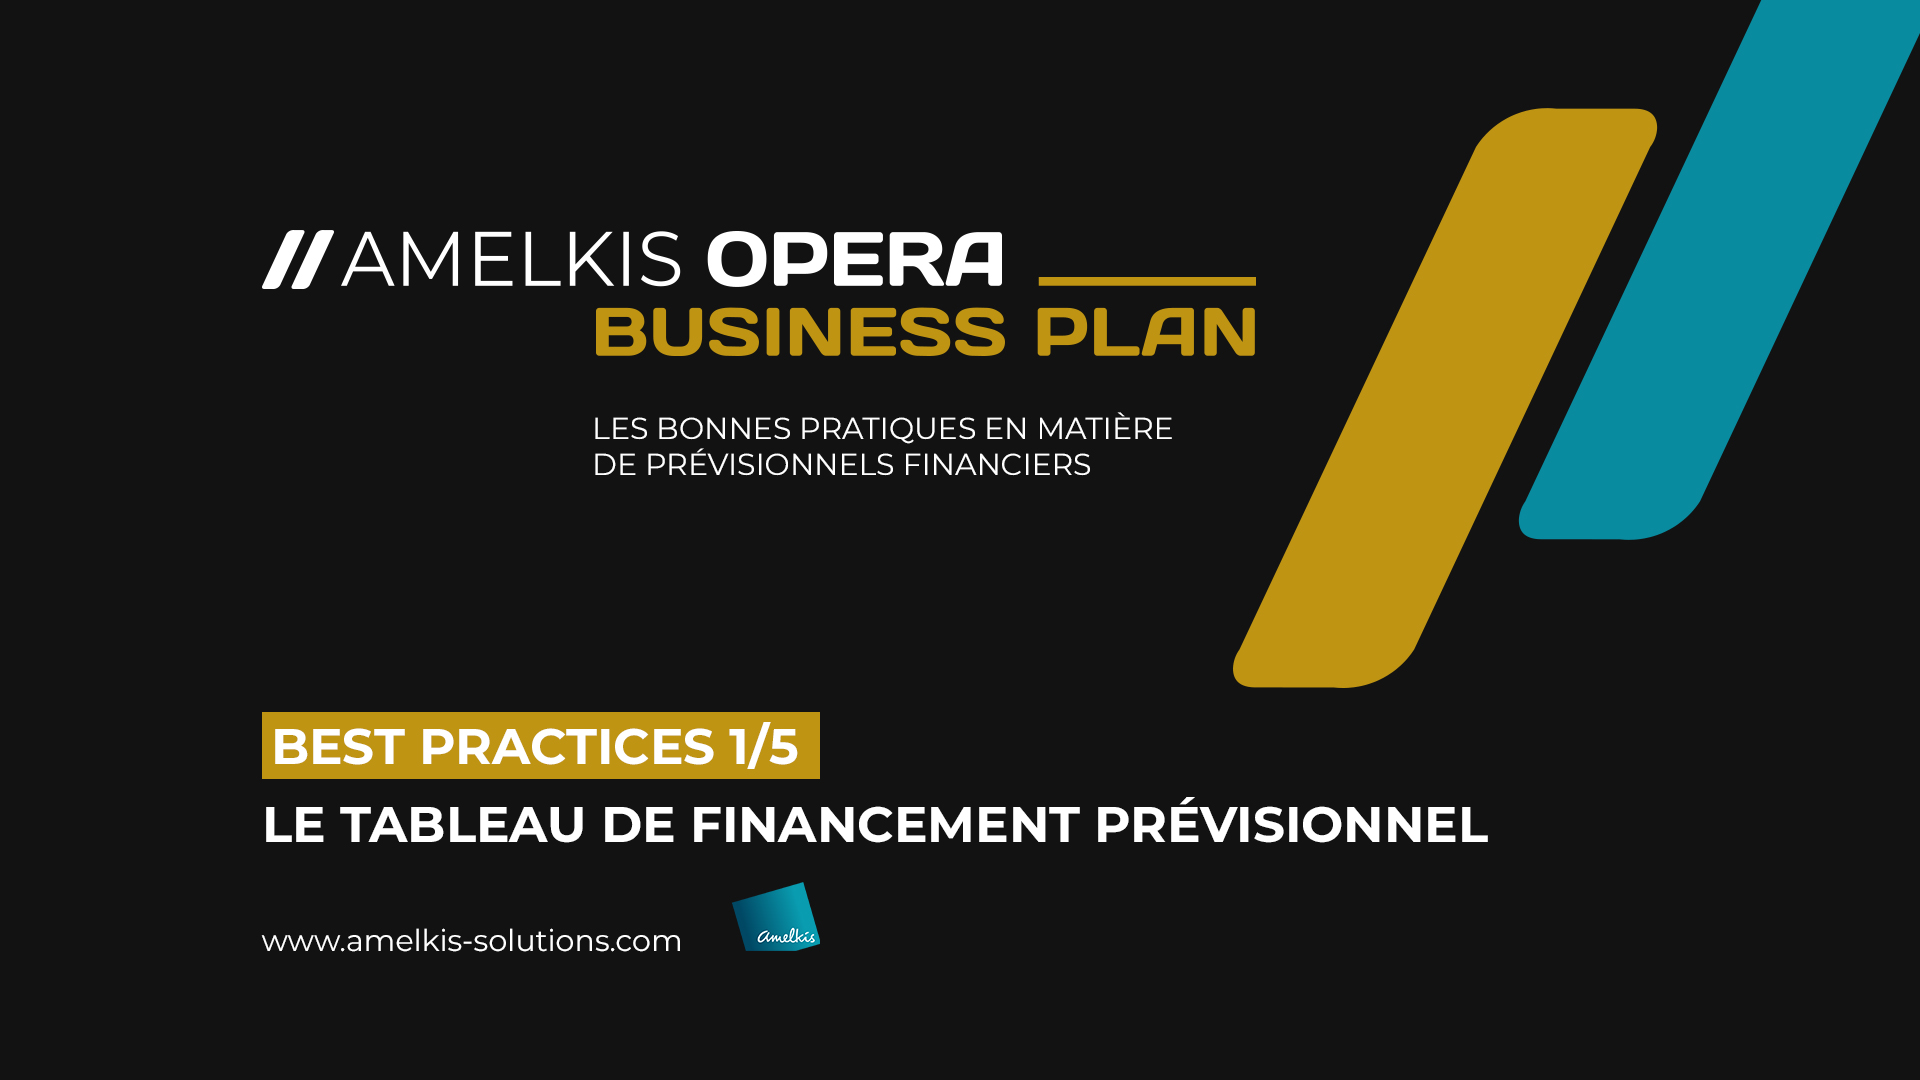 Business plan, best practice 1/5 : Le tableau de financement prévisionnel